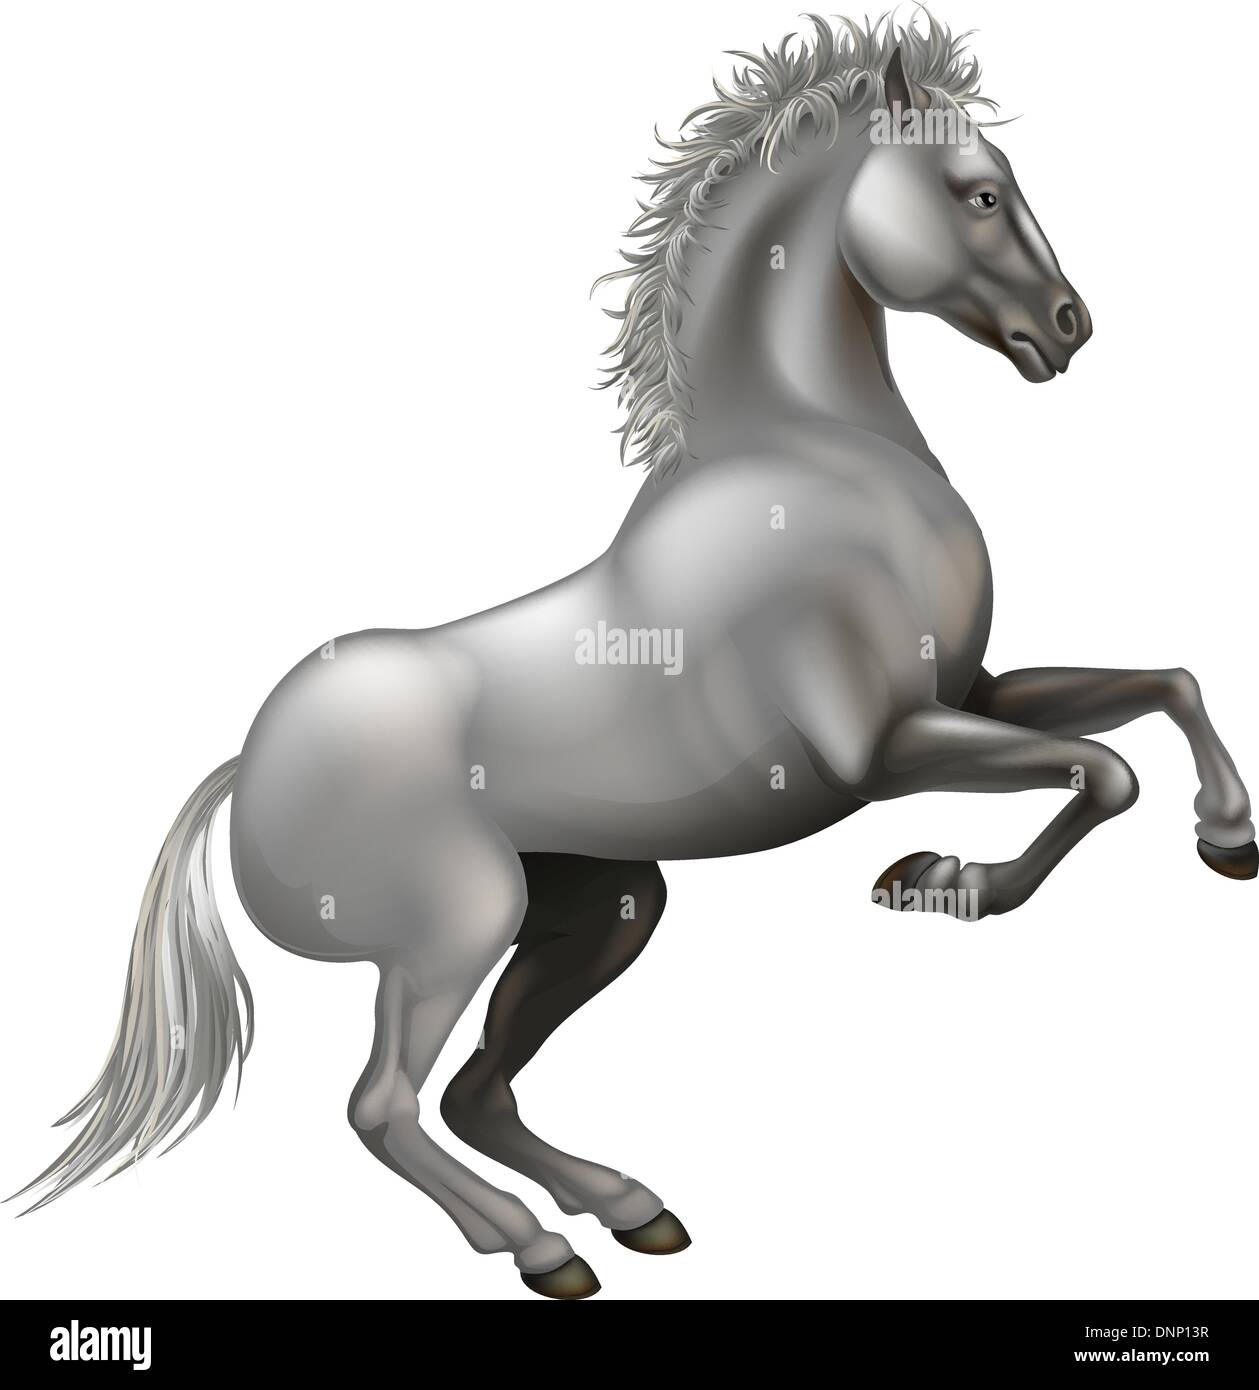 Illustrazione di un bianco potente allevamento di cavalli sulle zampe posteriori Illustrazione Vettoriale